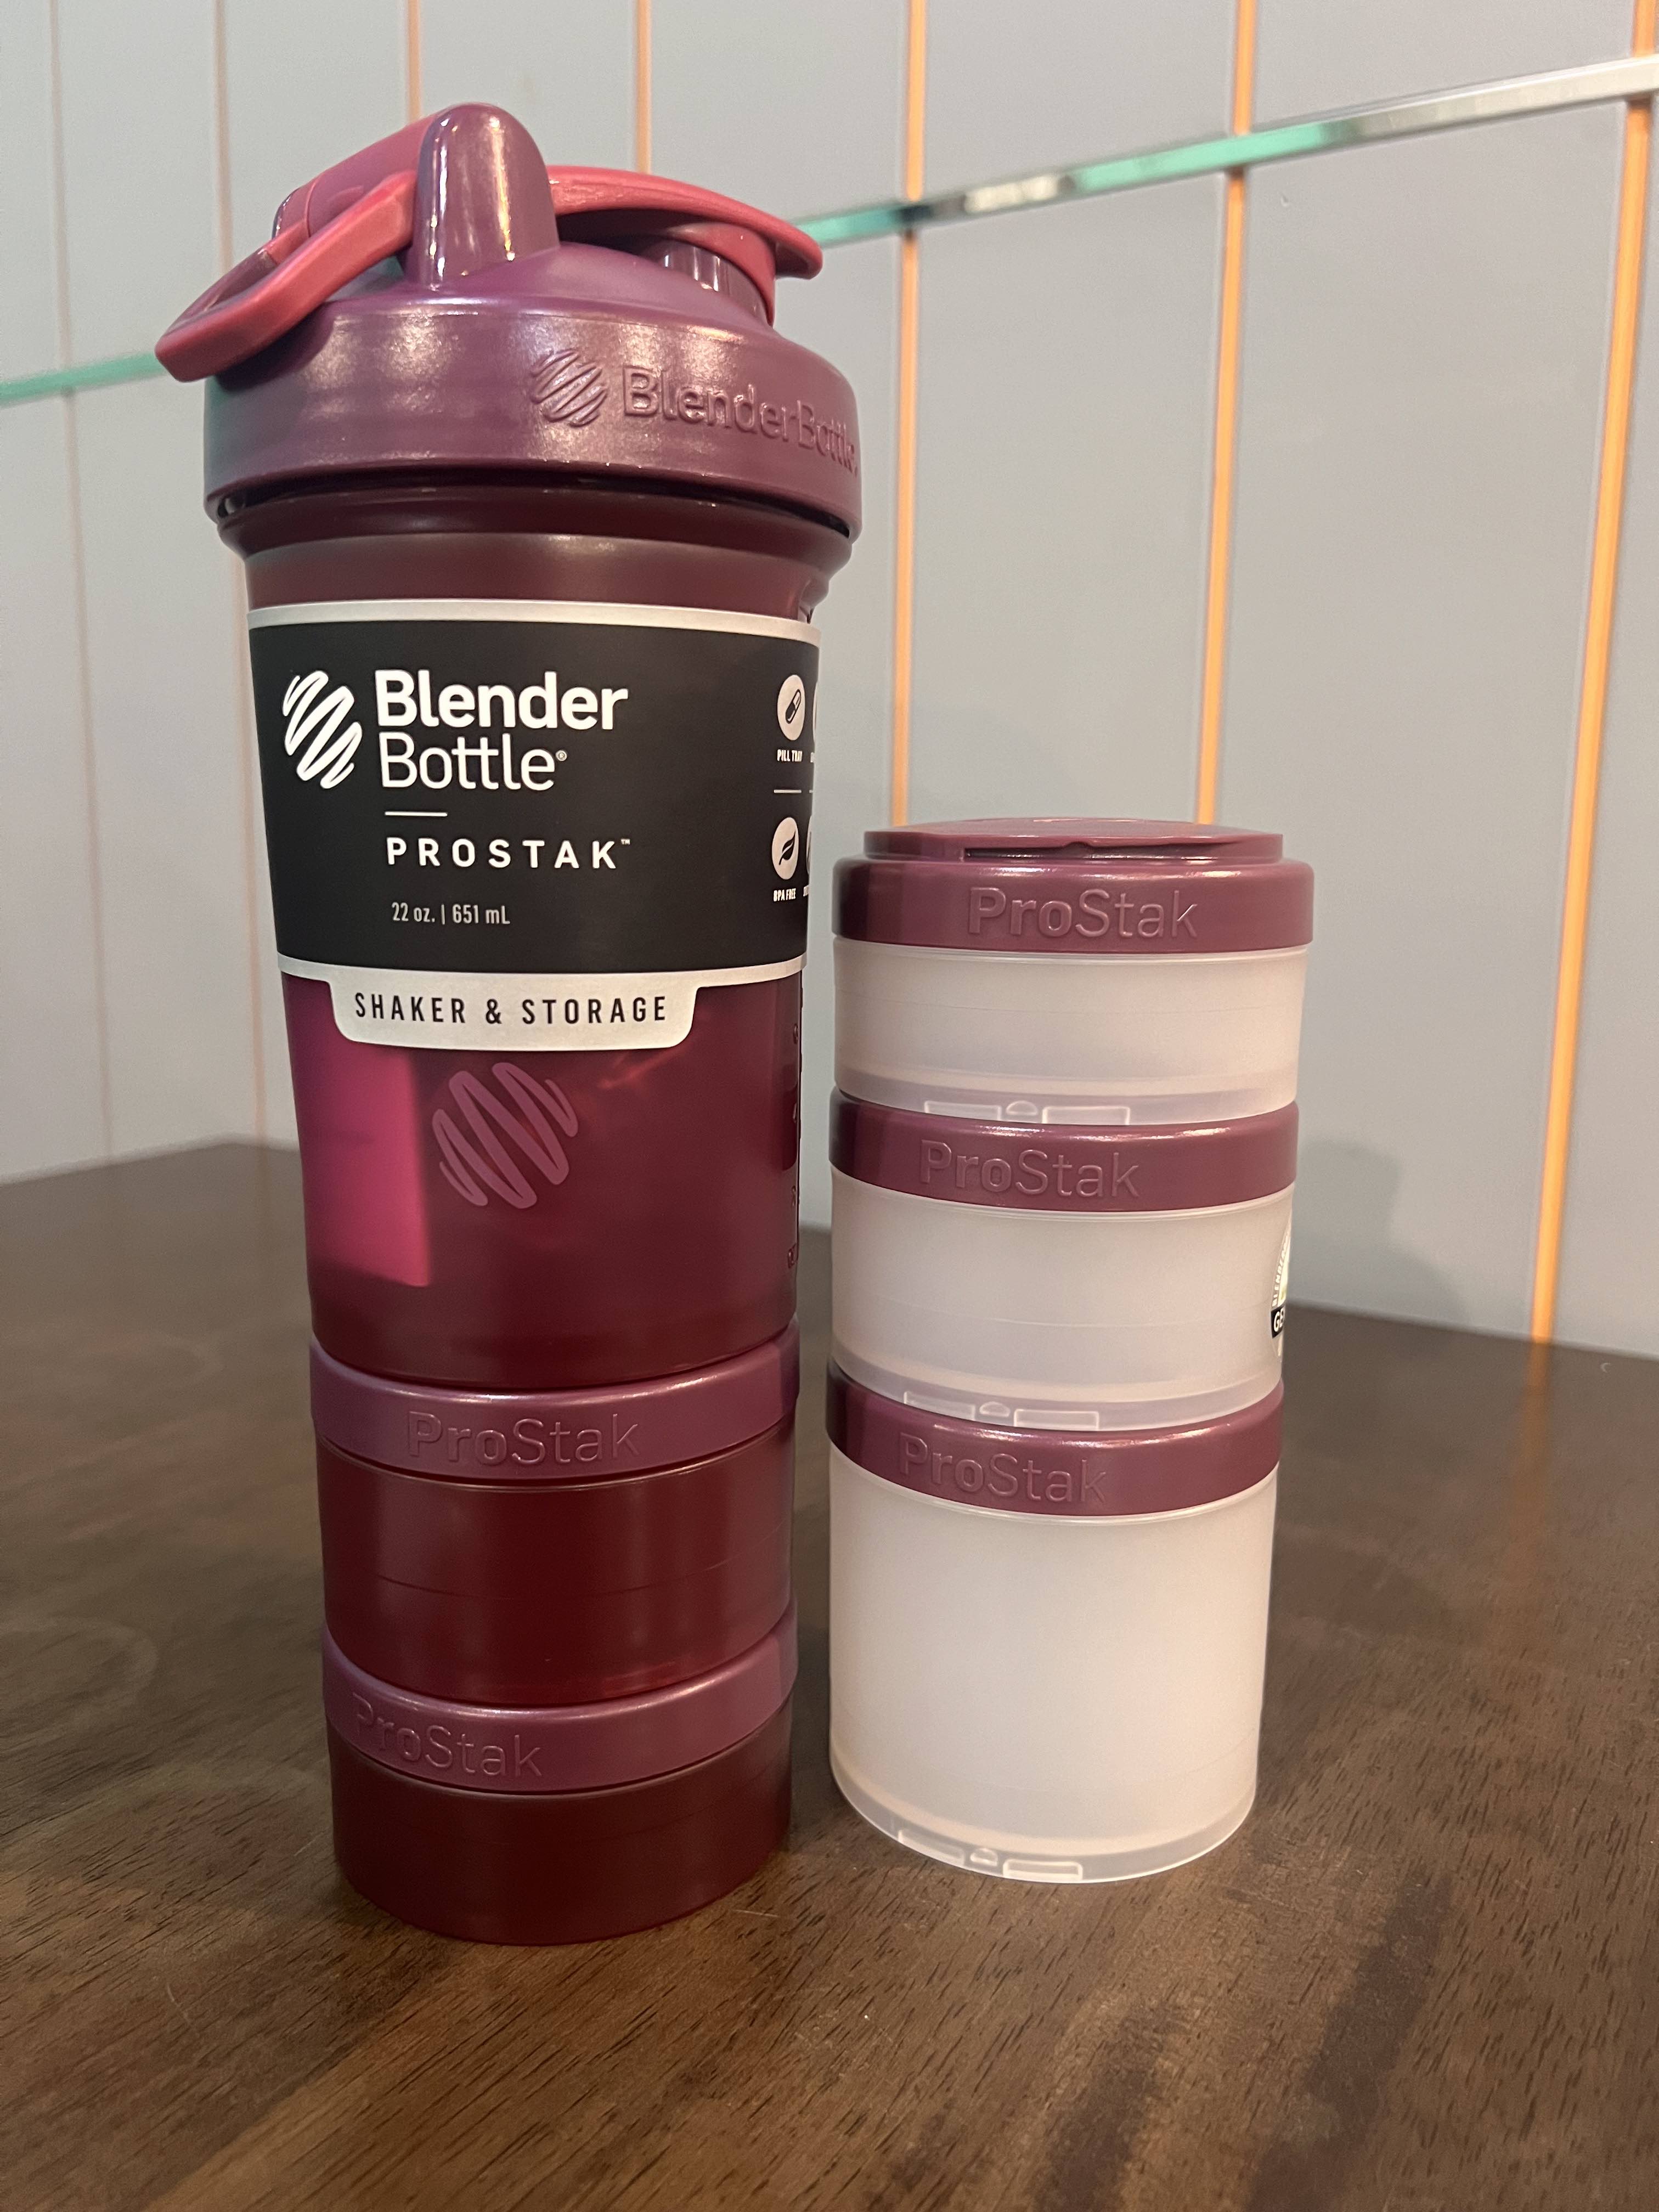 PROSTAK Blender Bottle 22 oz (651 ml) Rose Pink w/ wire whisk